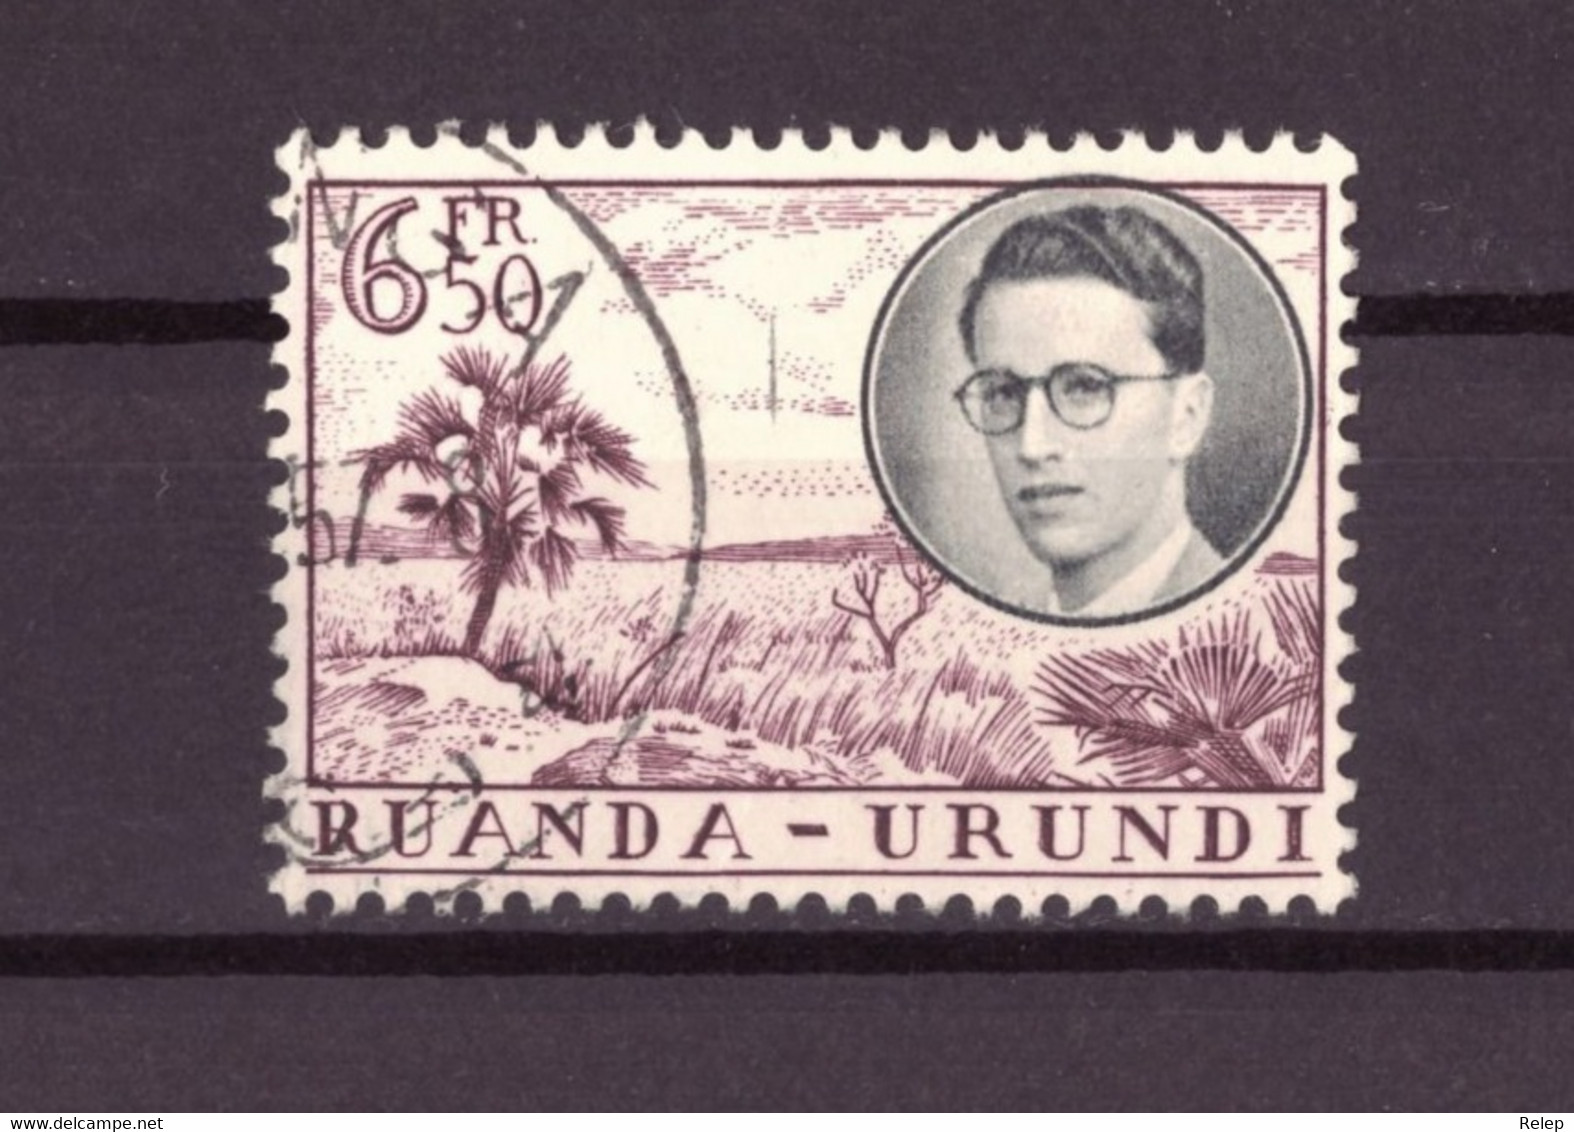 Ruanda - Urundi  1955  Royal Visit  - TB - 6.50Fr - Usati